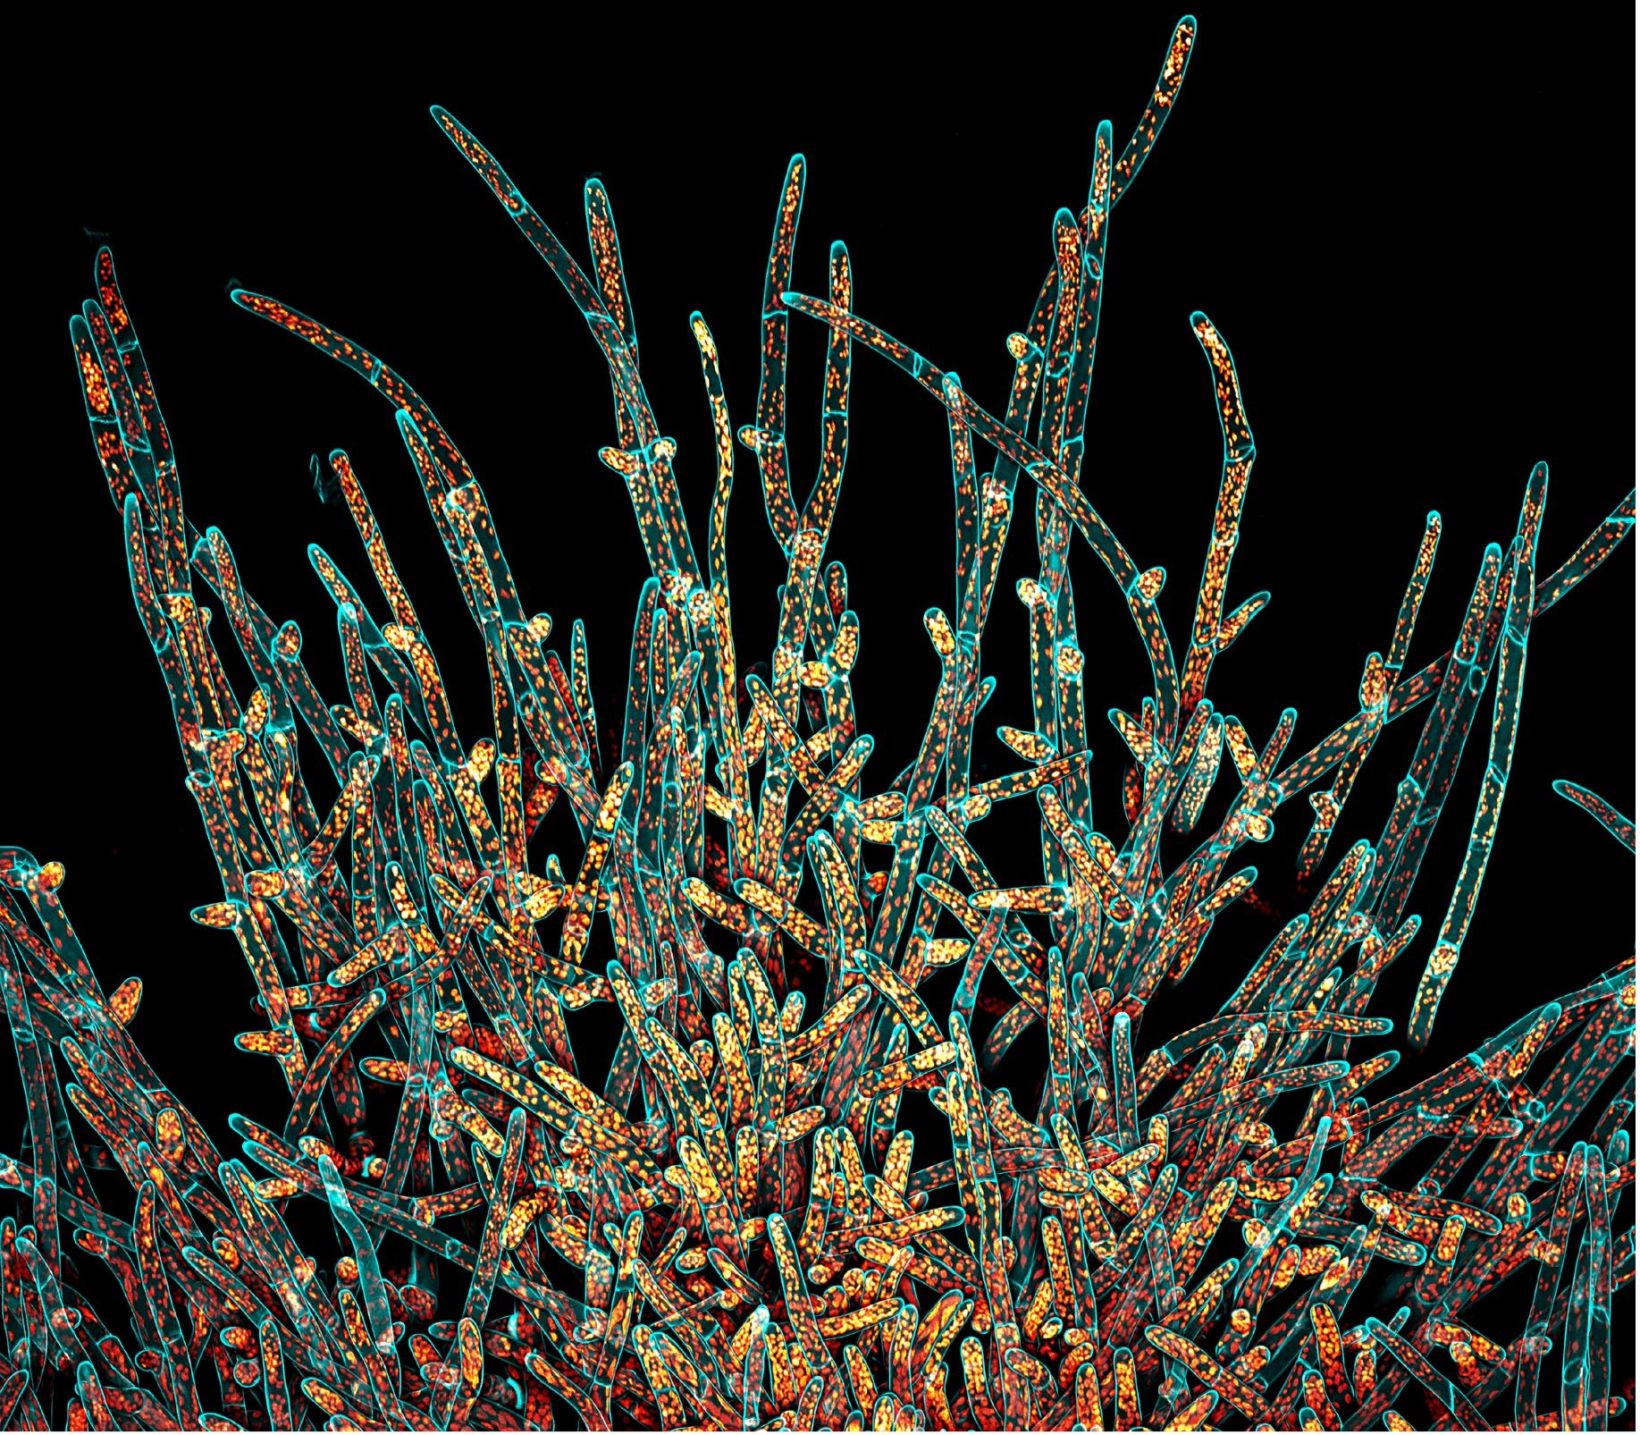 Image de cellules protonémiques de mousse Physcomitrium patens, image gagnante du concours IOTY de 2021 pour la région Amériques